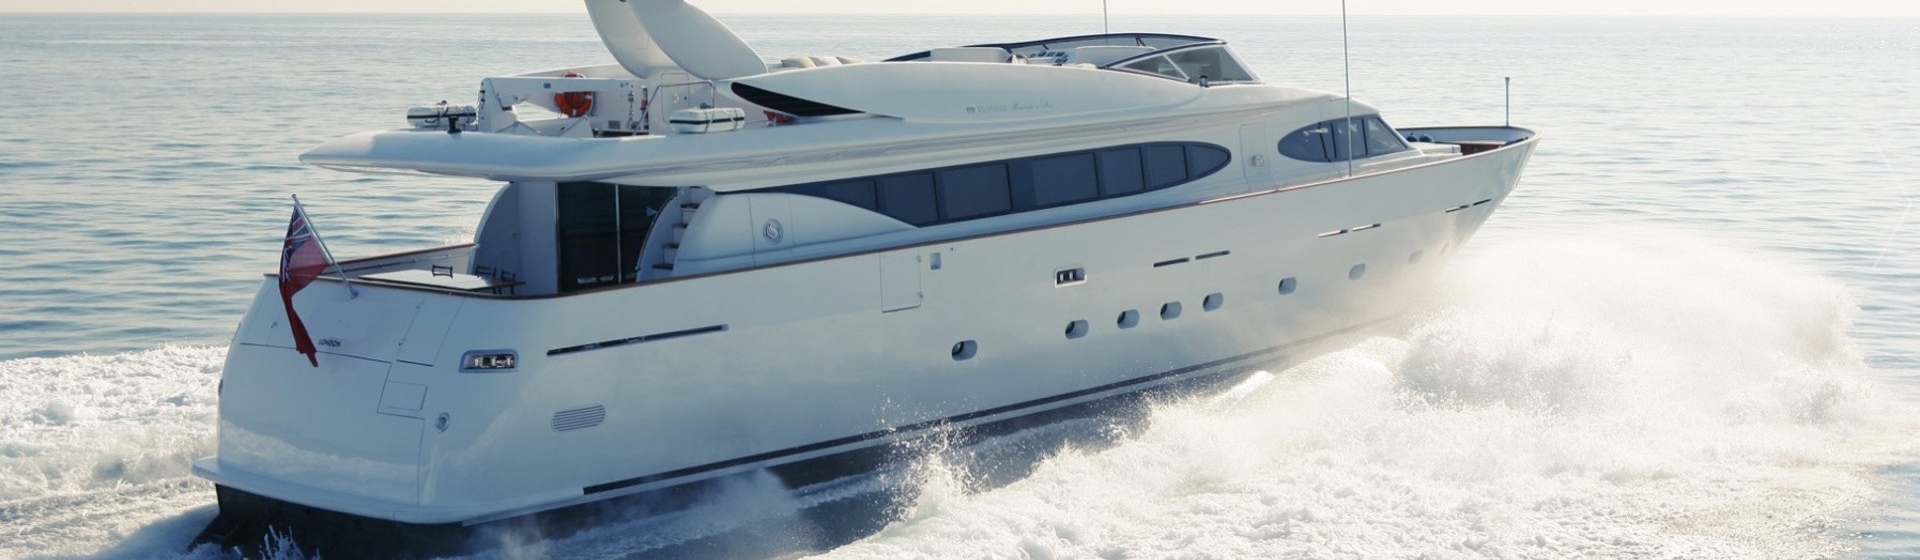 Luxury Crewed Yacht Charter Antibes Mondomarine 95